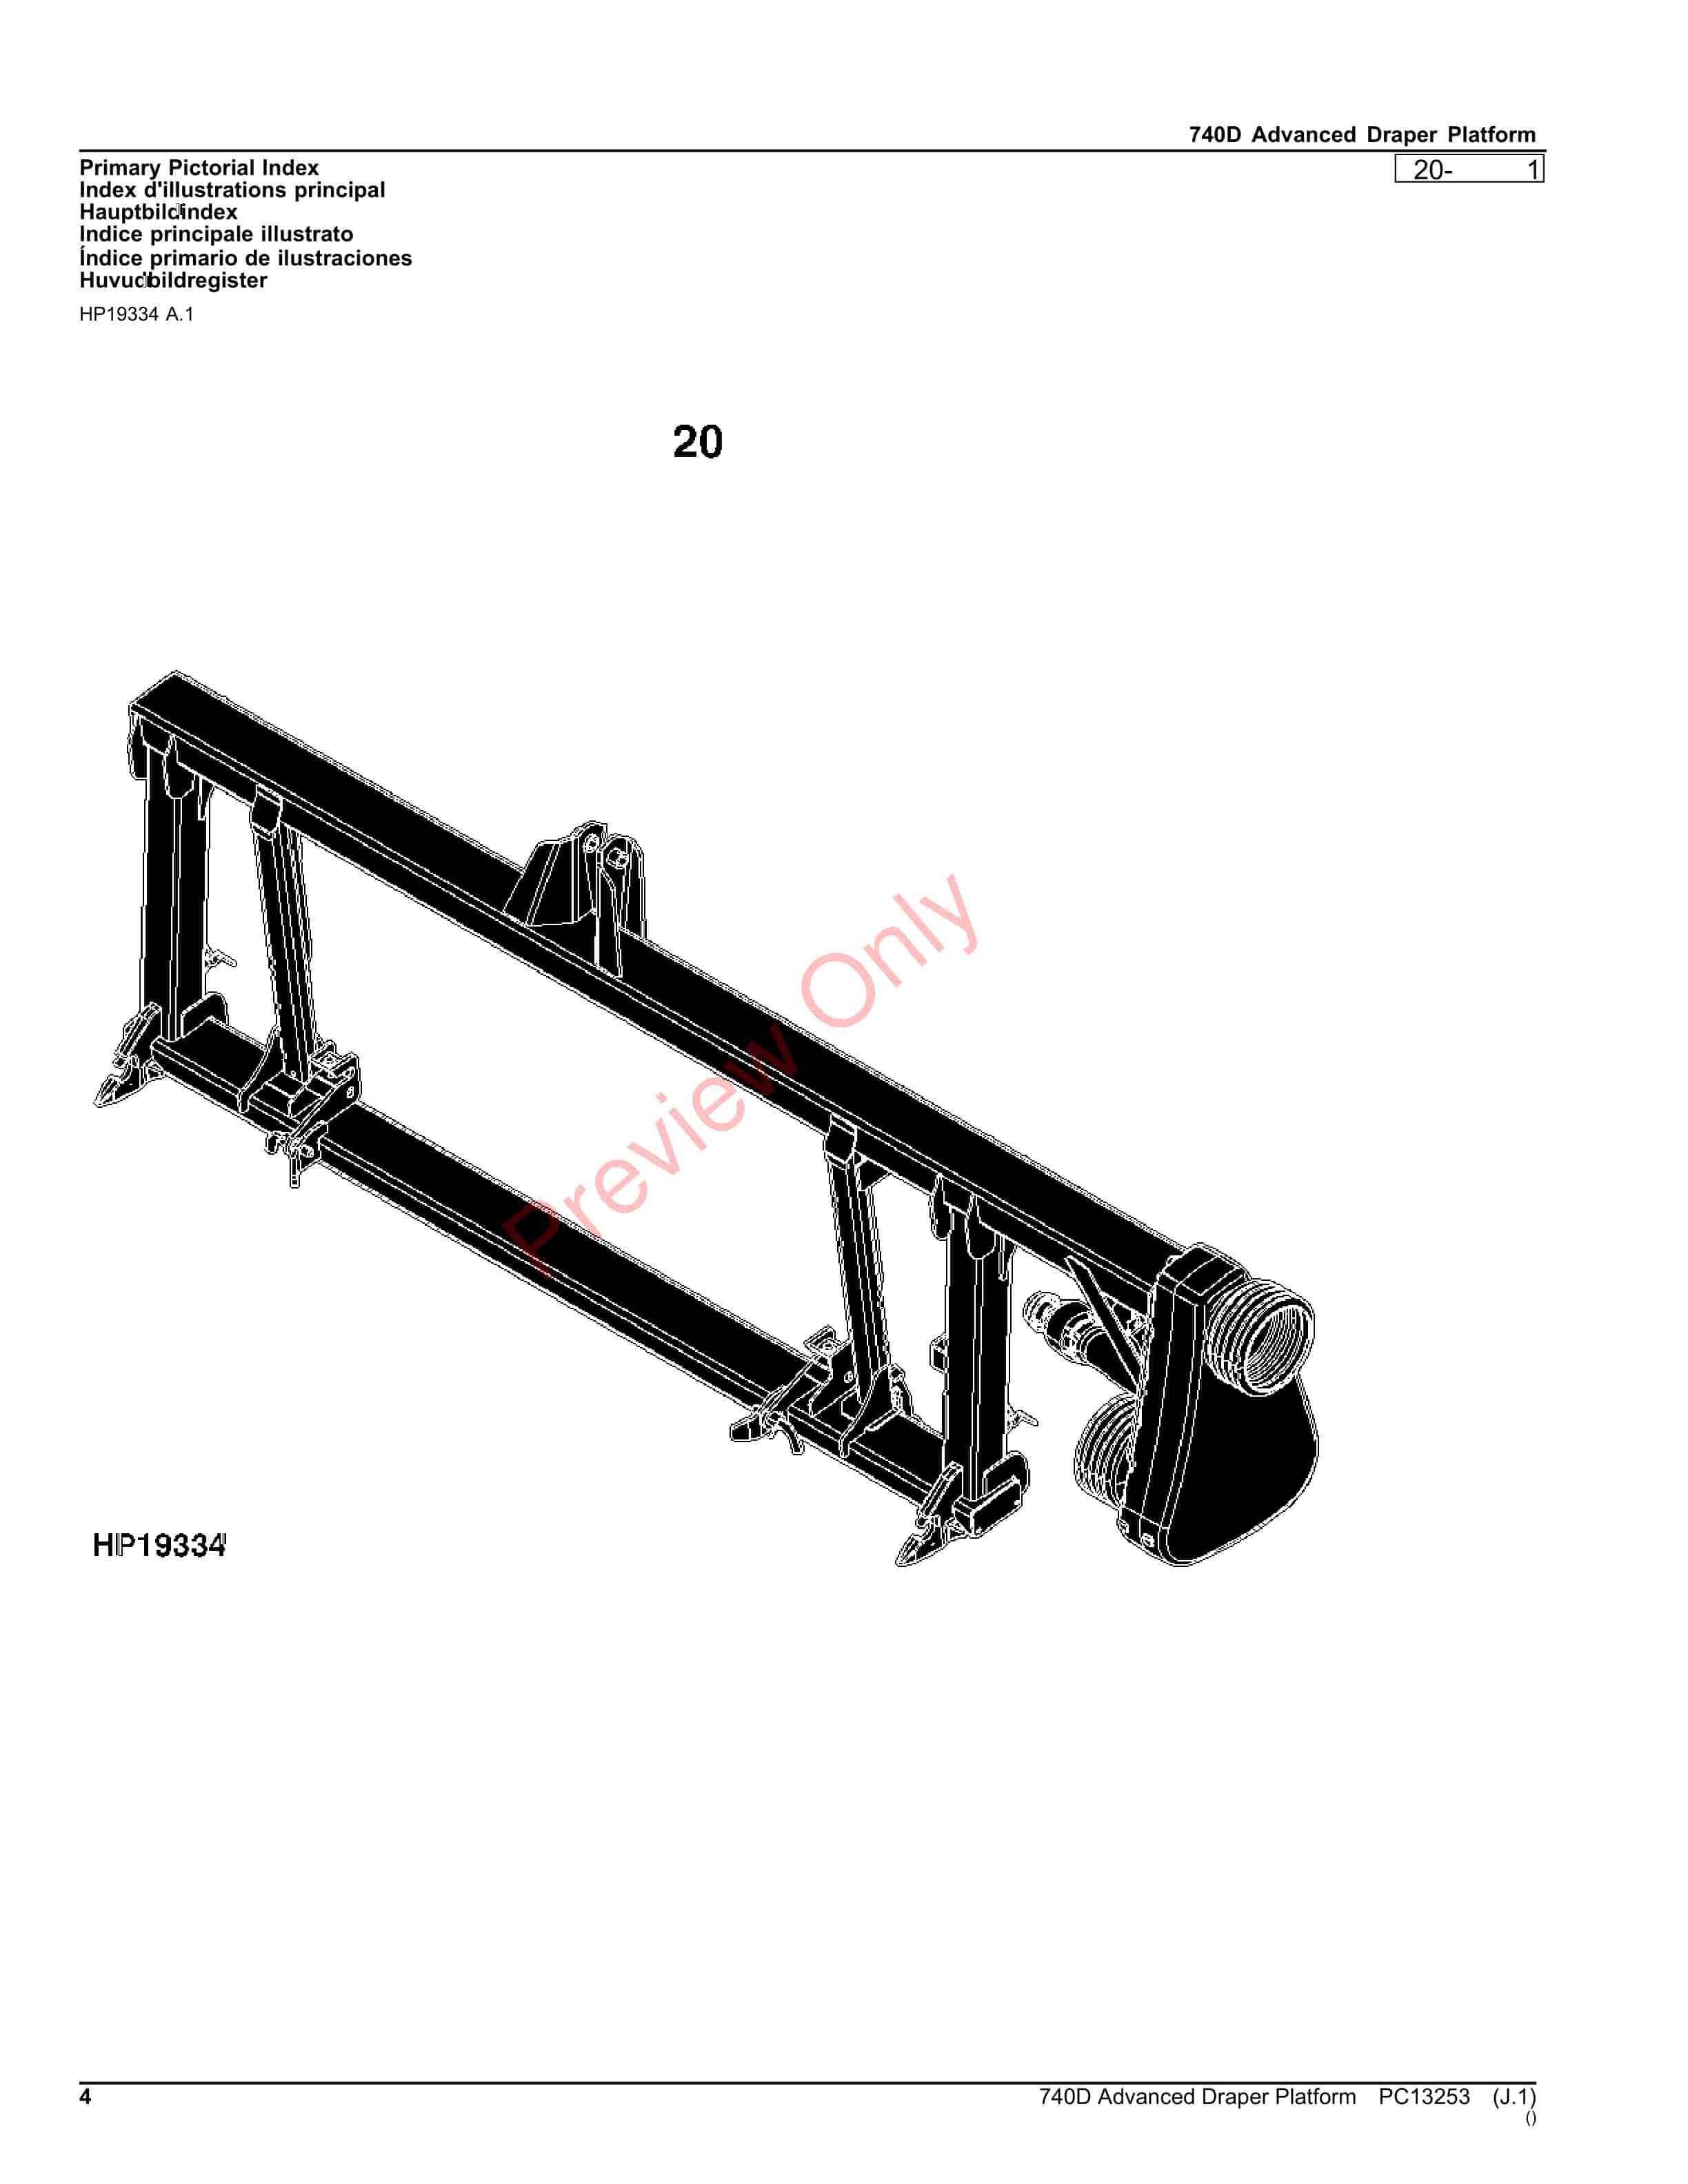 John Deere 740D Advanced Draper Platform Parts Catalog PC13253 26OCT23-4